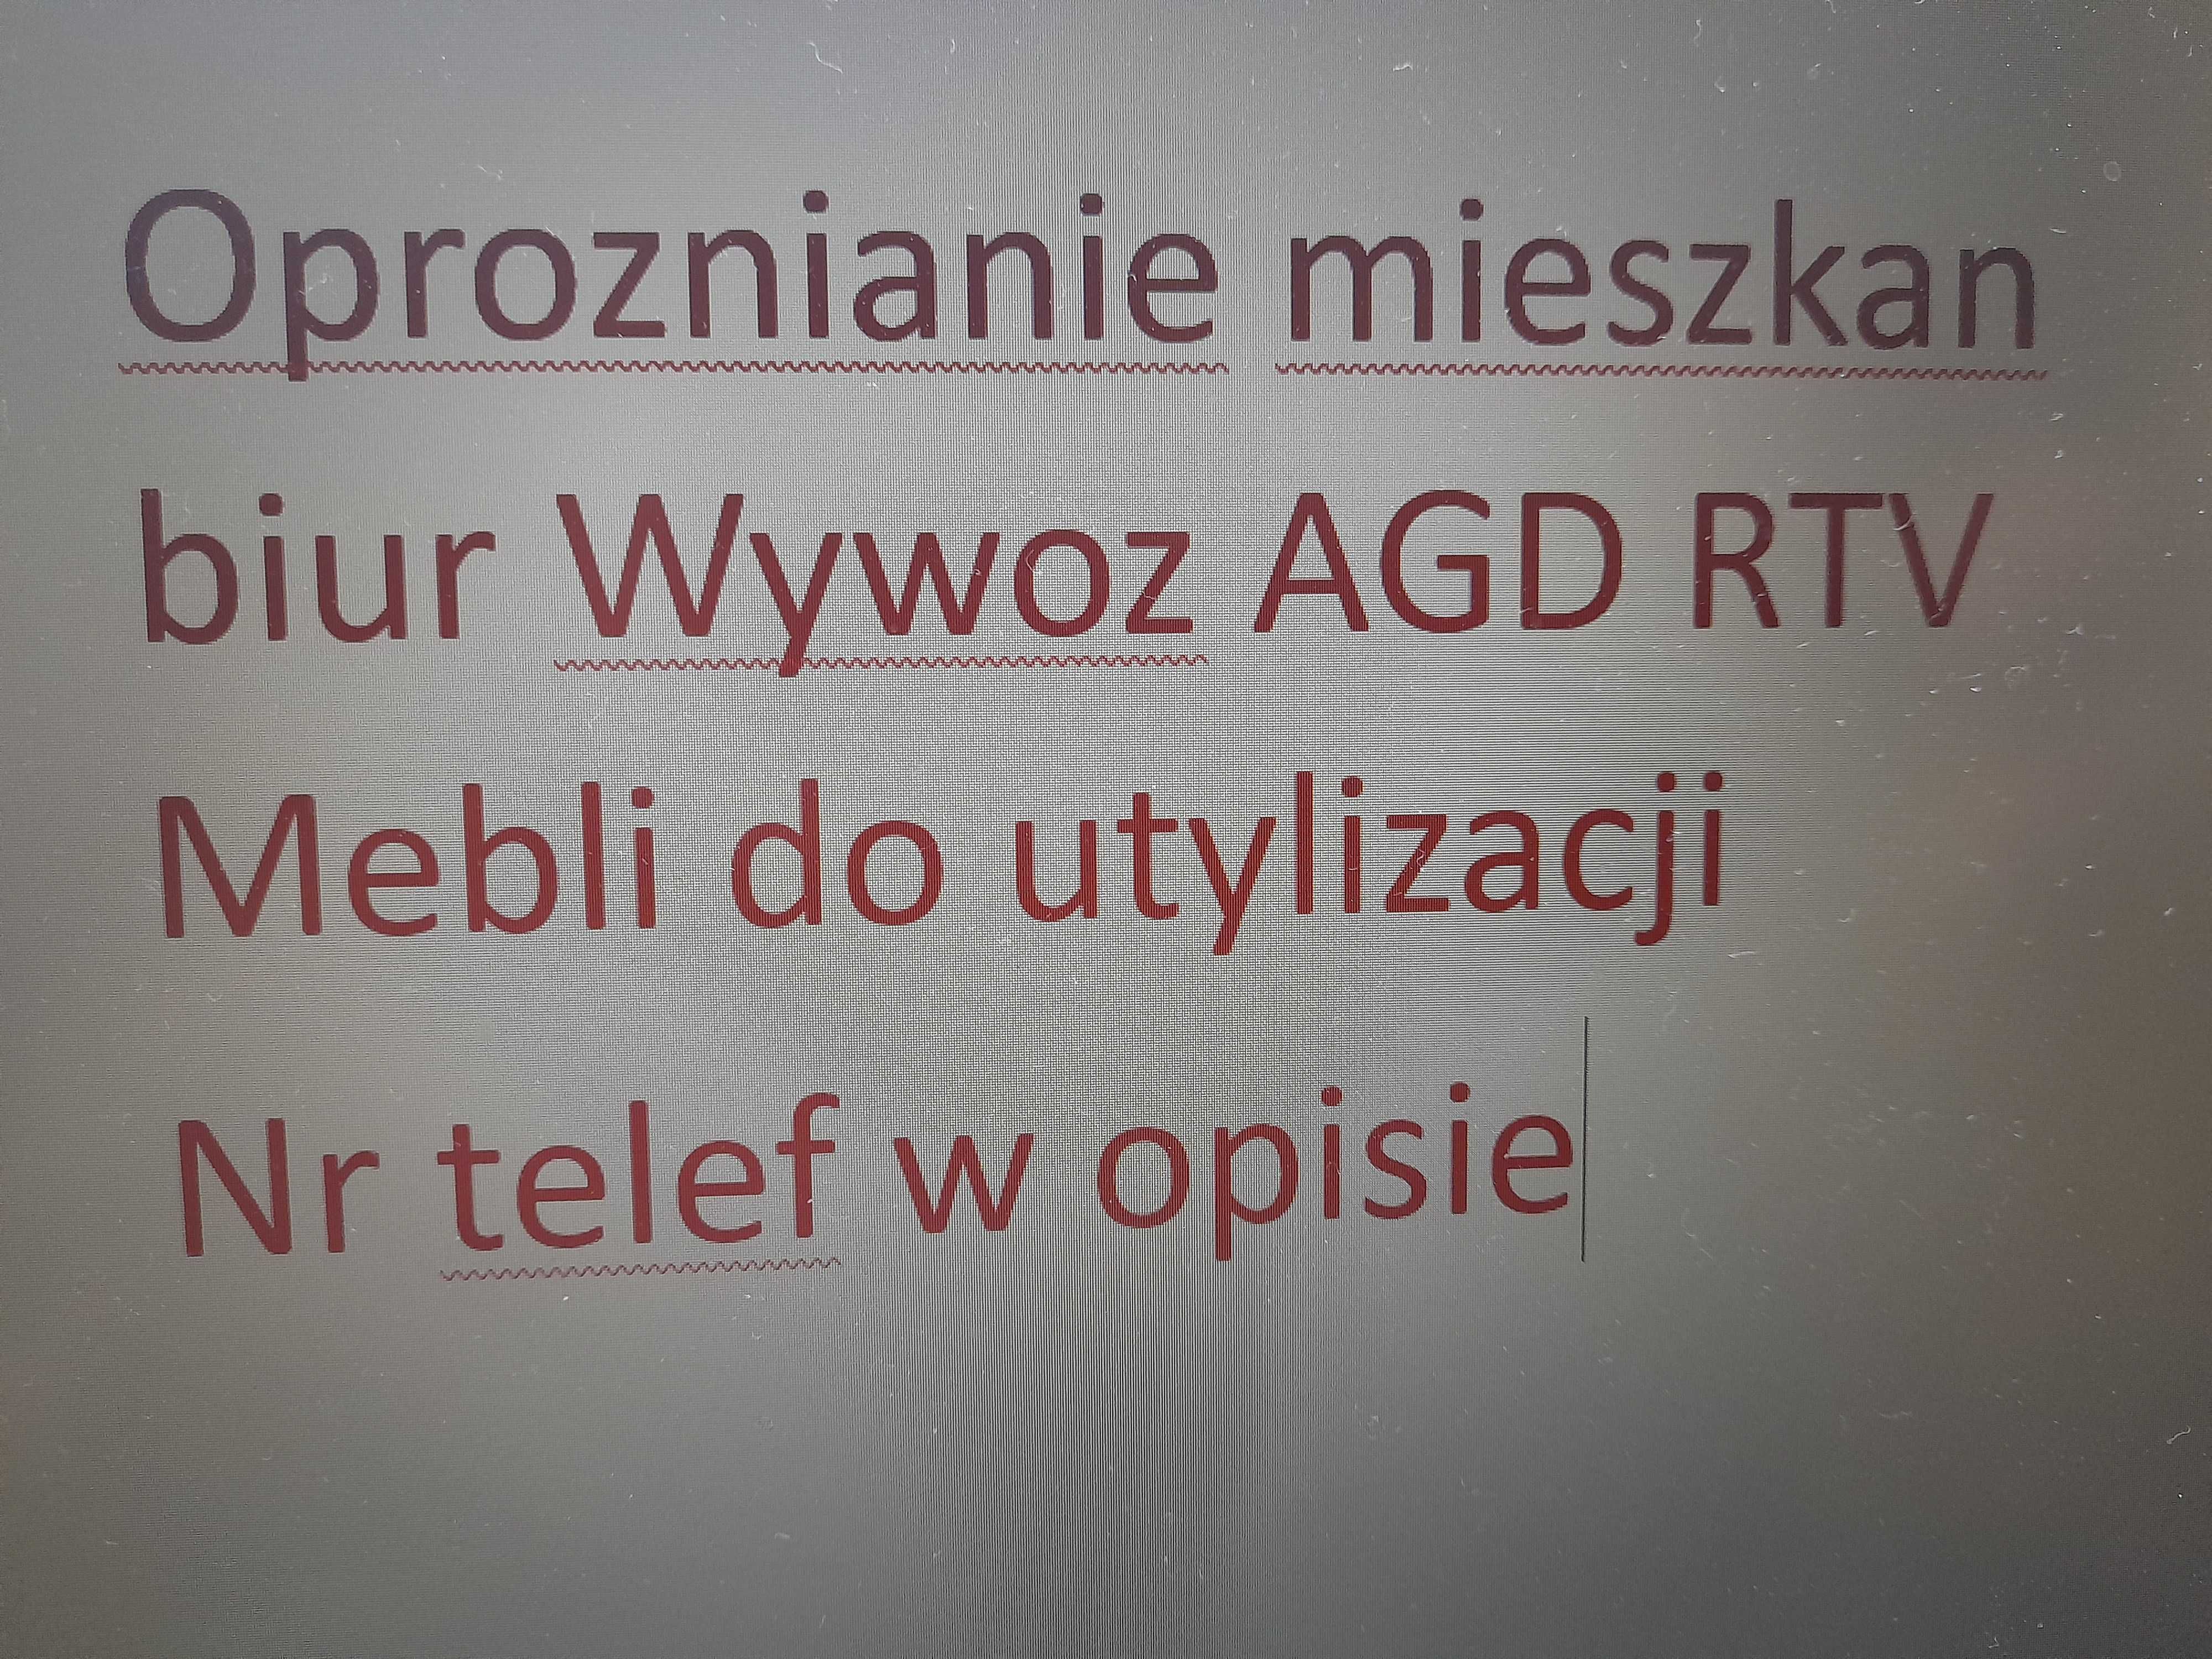 Oproznianie mieszkan biur Wywoz AGD RTV Mebli do utylizacji Zory